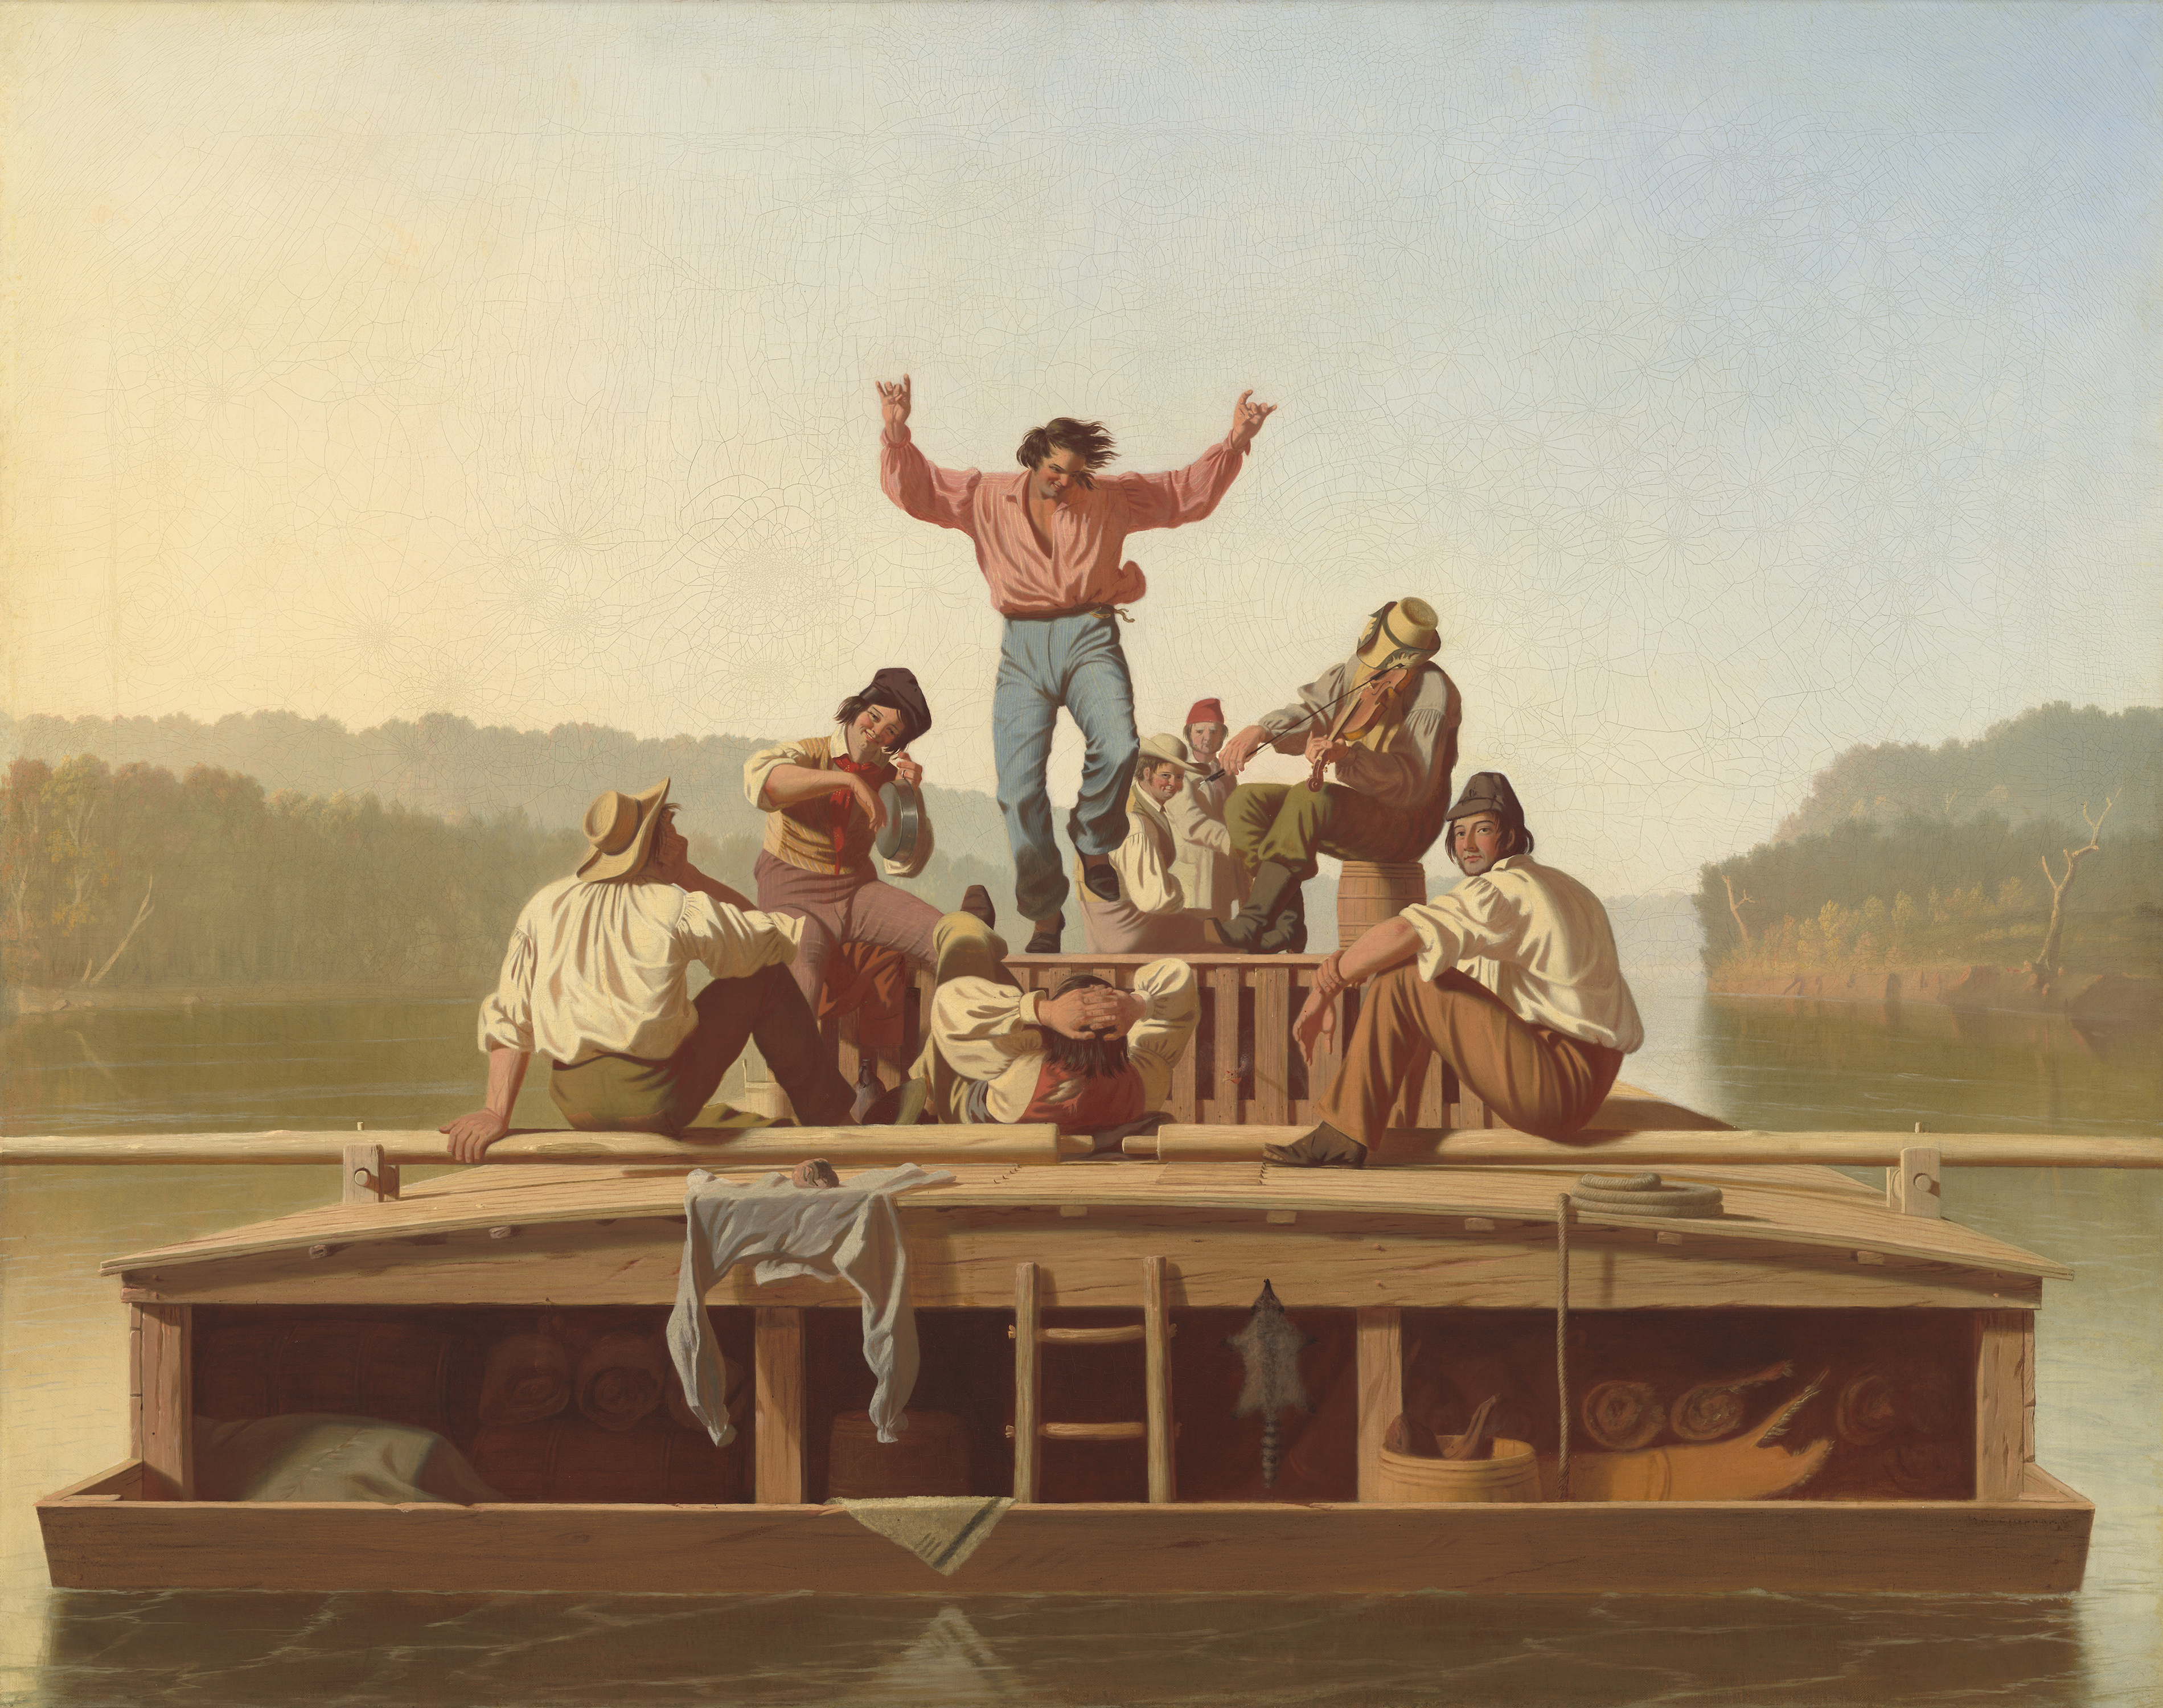 Neşeli Kayıkçılar by George Caleb Bingham - 1846 